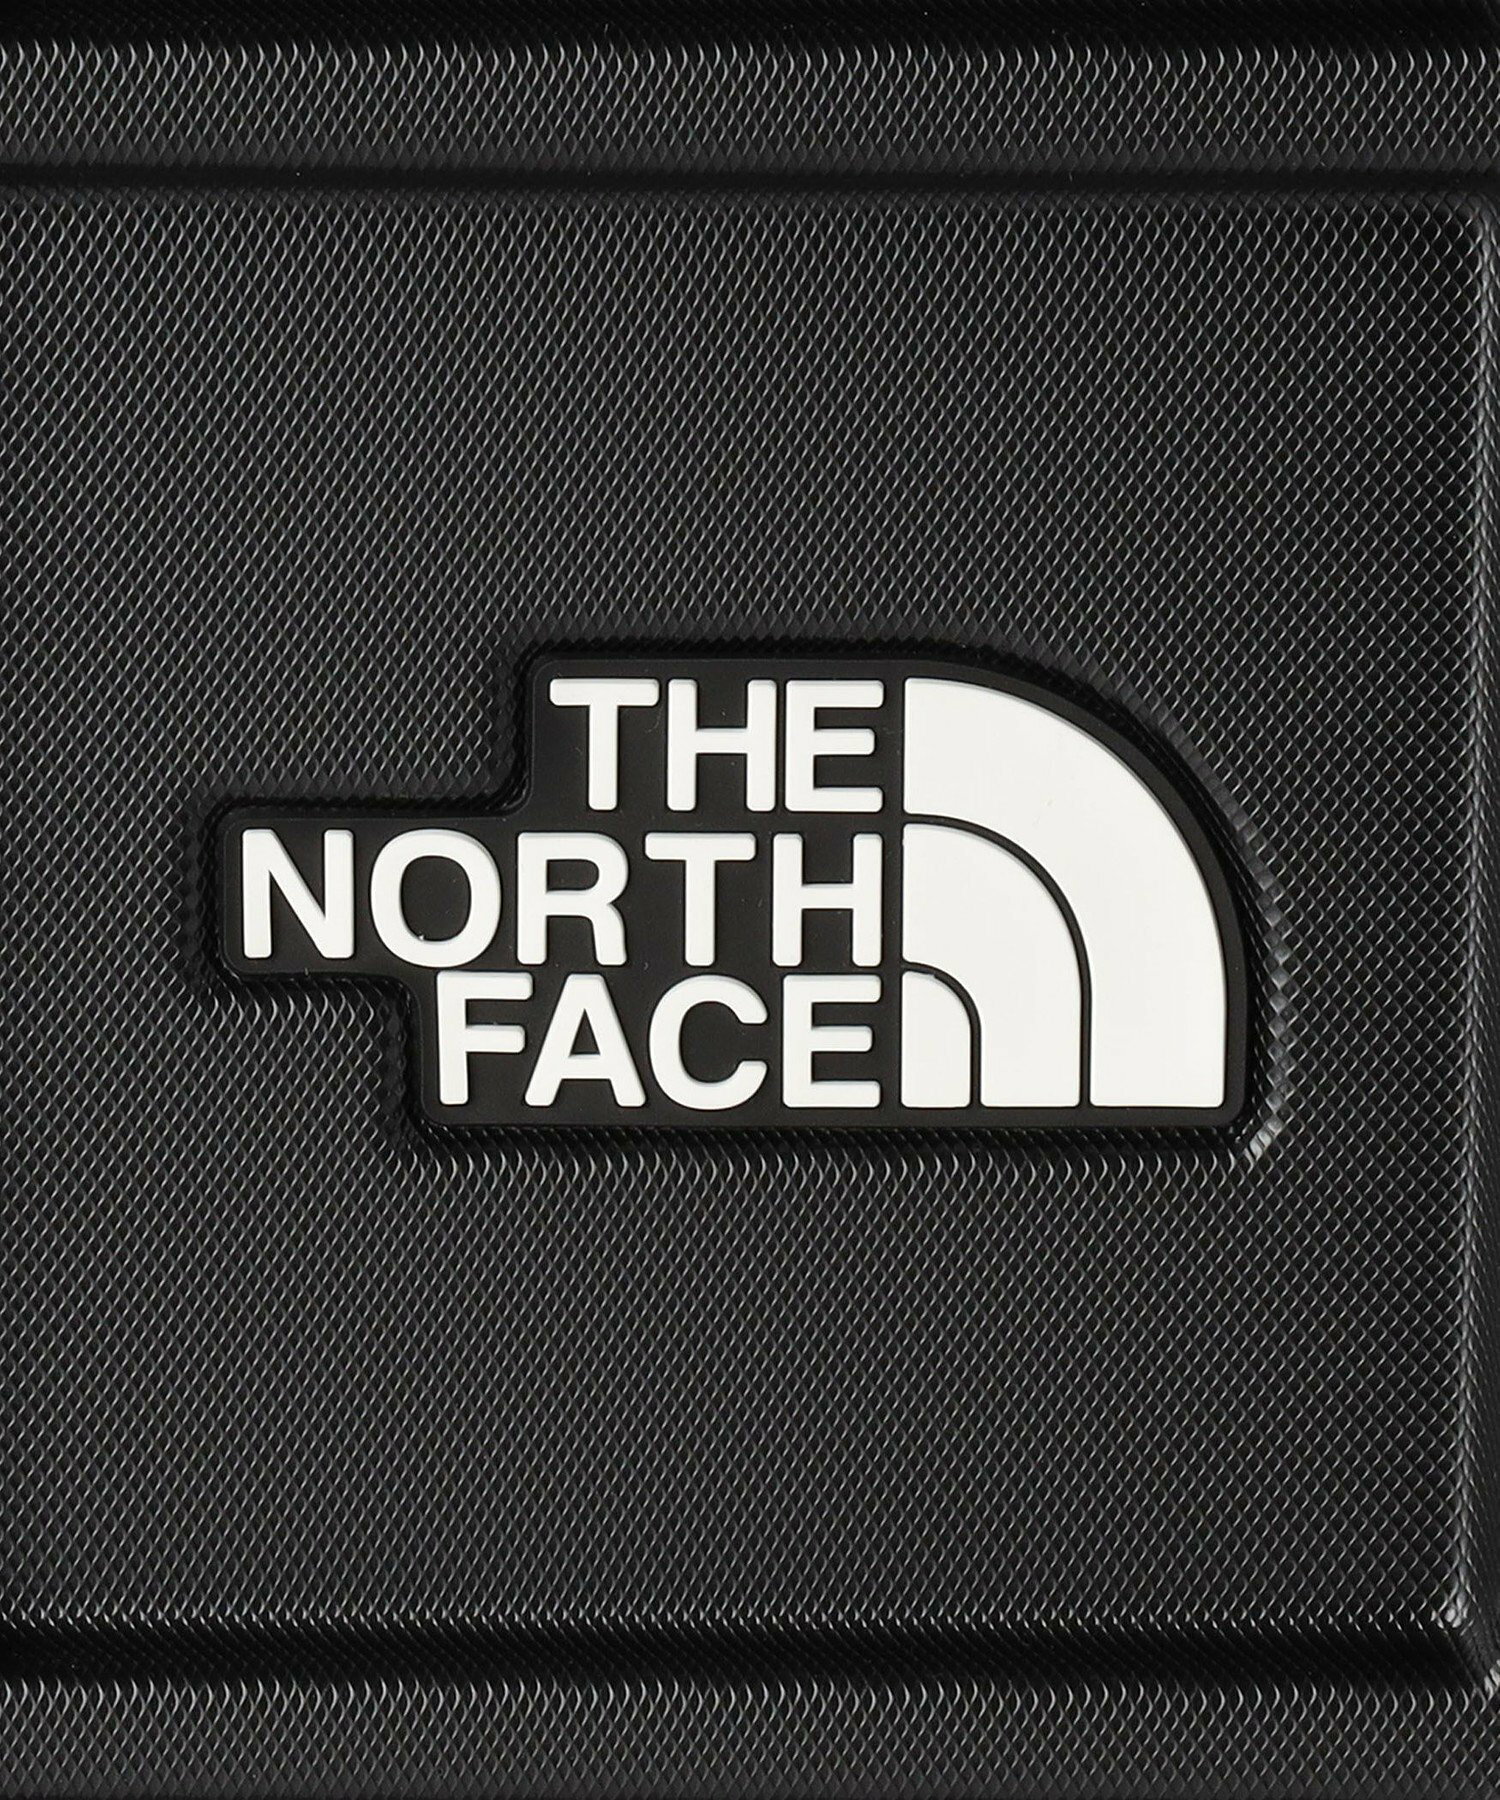 <THE NORTH FACE>オールウェザー4ウィーラー30インチ / 70L